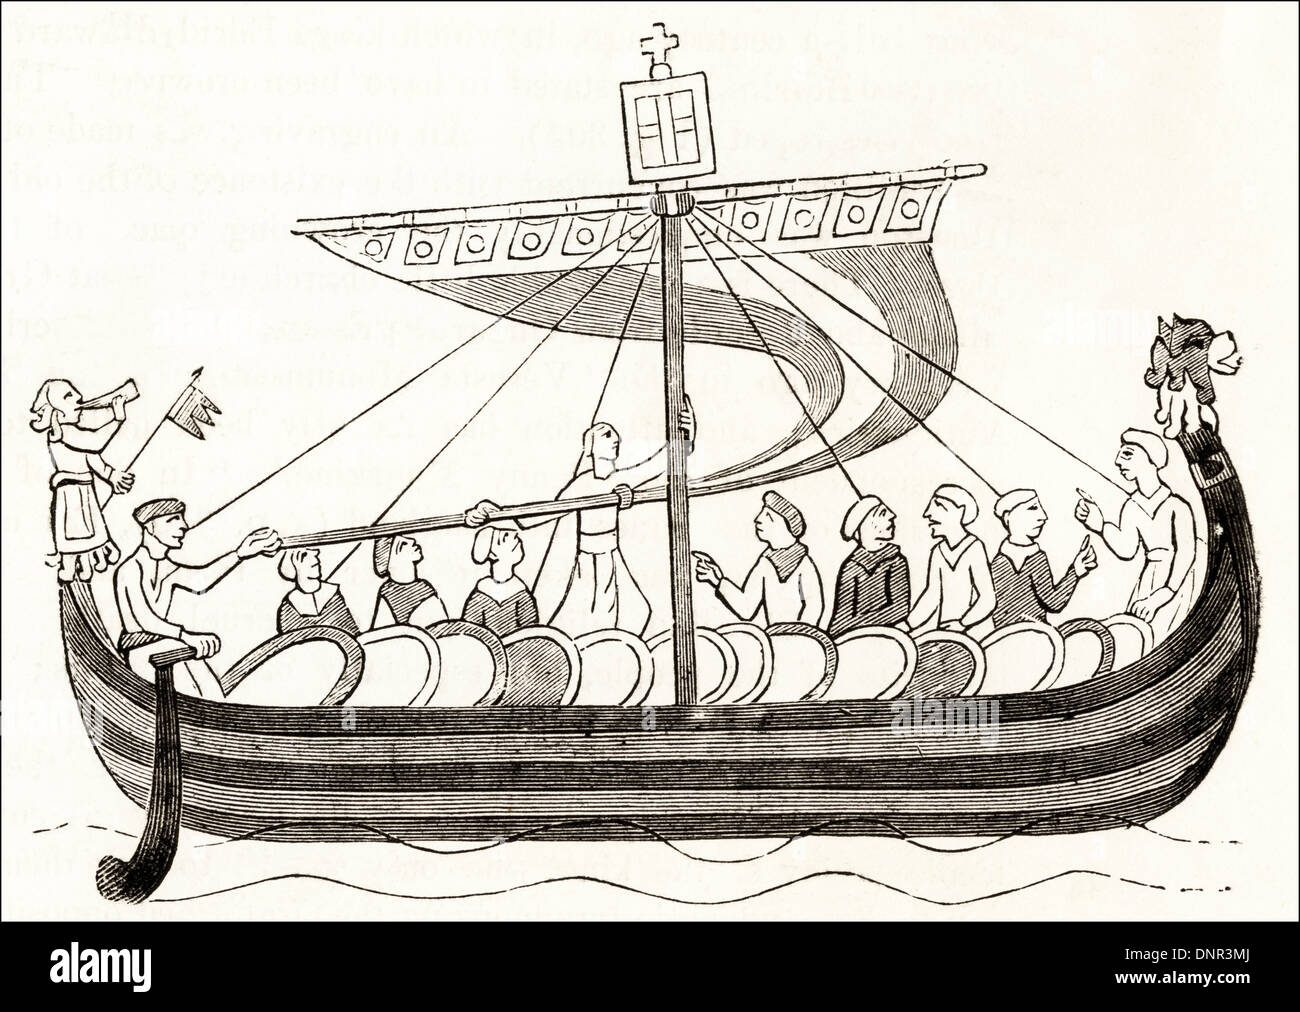 Navire de la flotte de Guillaume duc de Normandie transportant des troupes pour l'invasion de l'Angleterre à partir de la Tapisserie de Bayeux. Circa 1845 gravure sur bois de l'époque victorienne. Banque D'Images